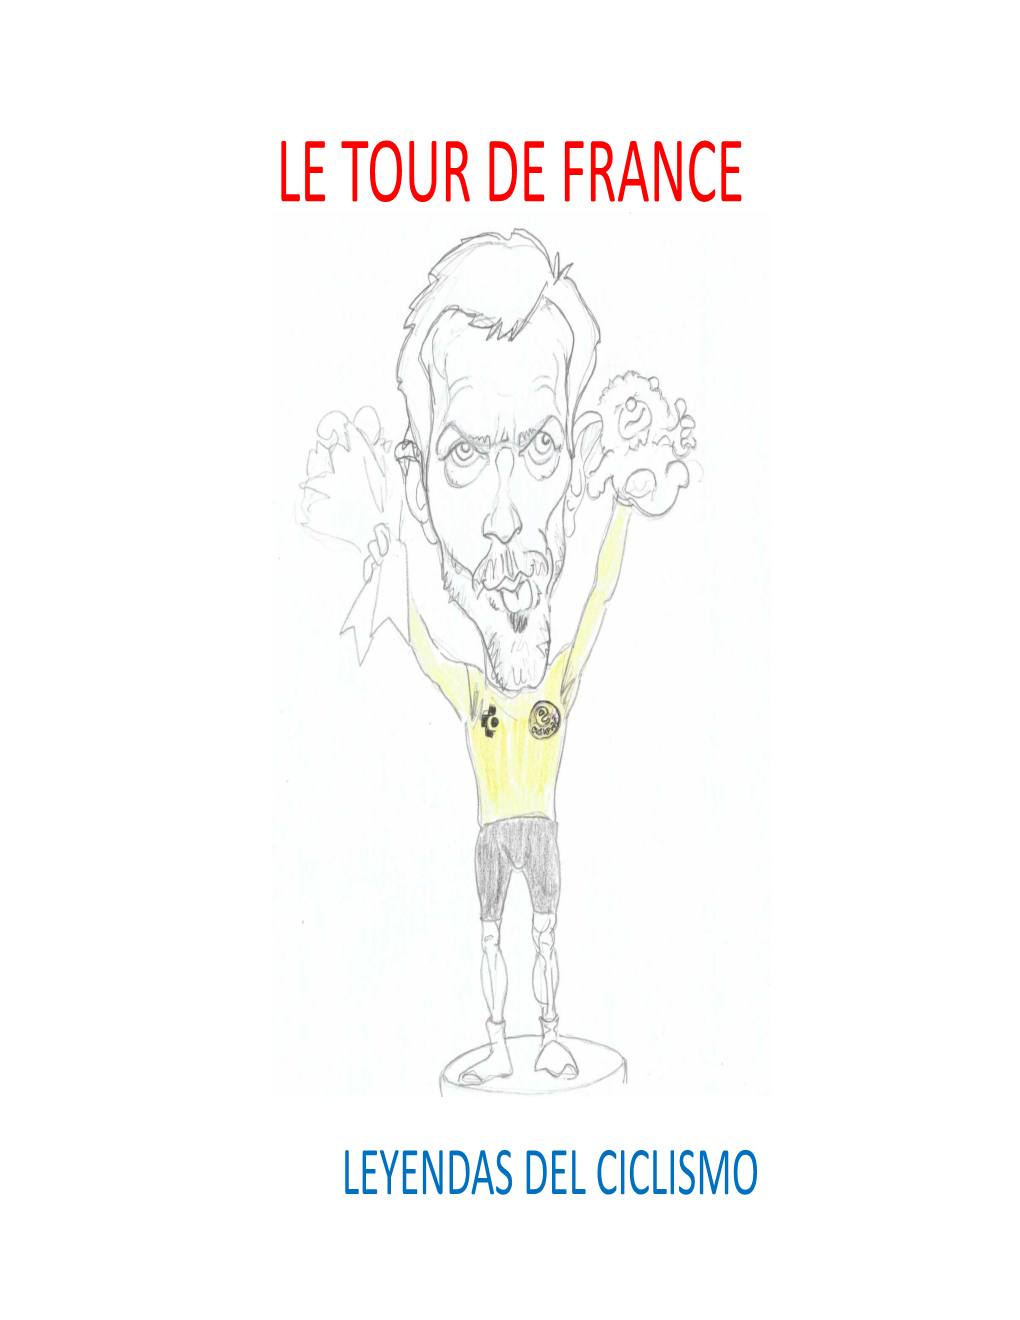 Le Tour De France